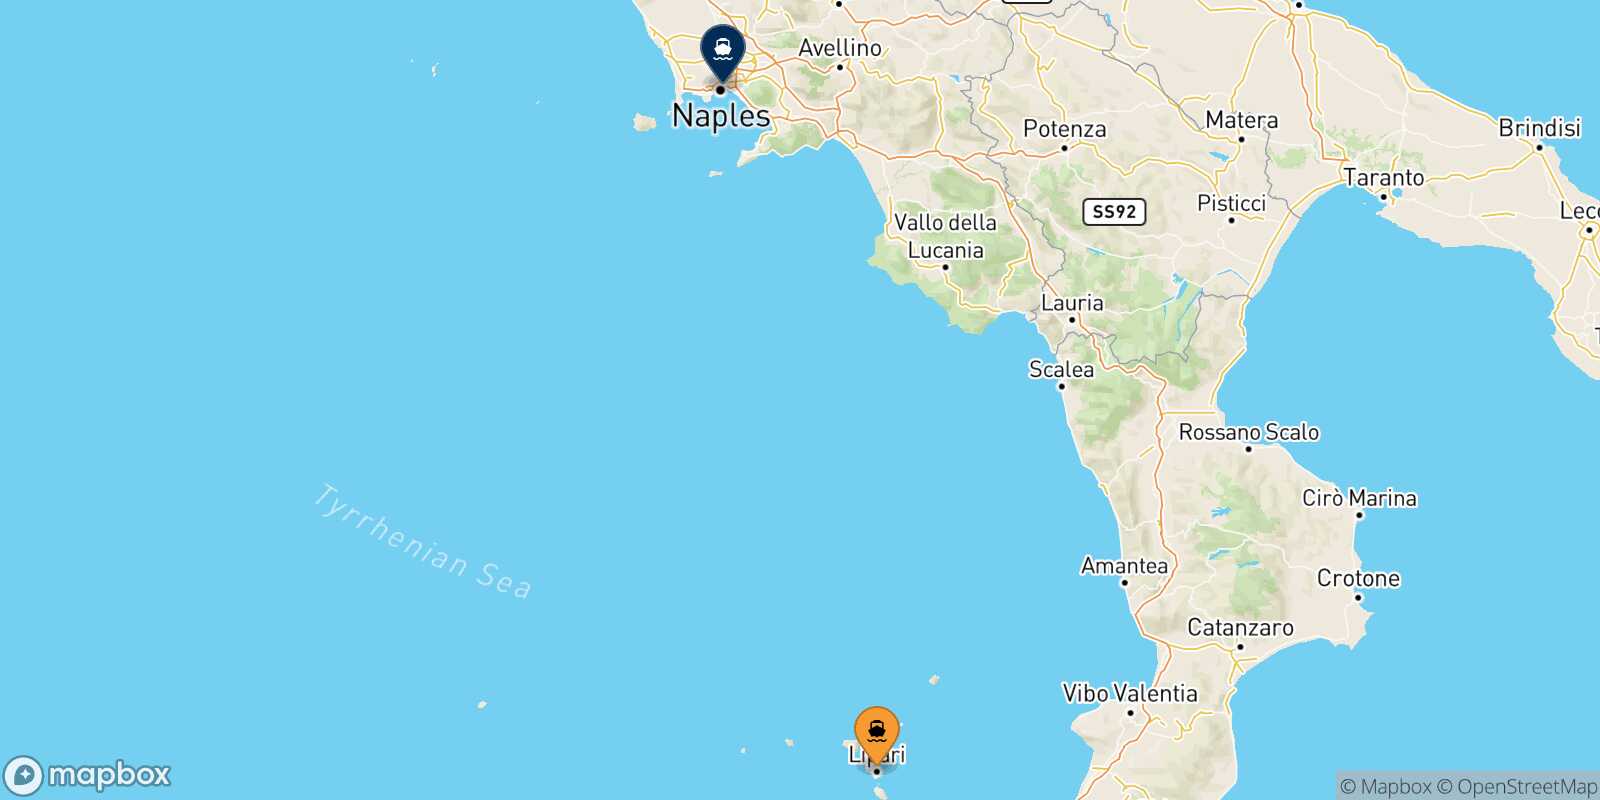 Mapa de la ruta Lipari Nápoles